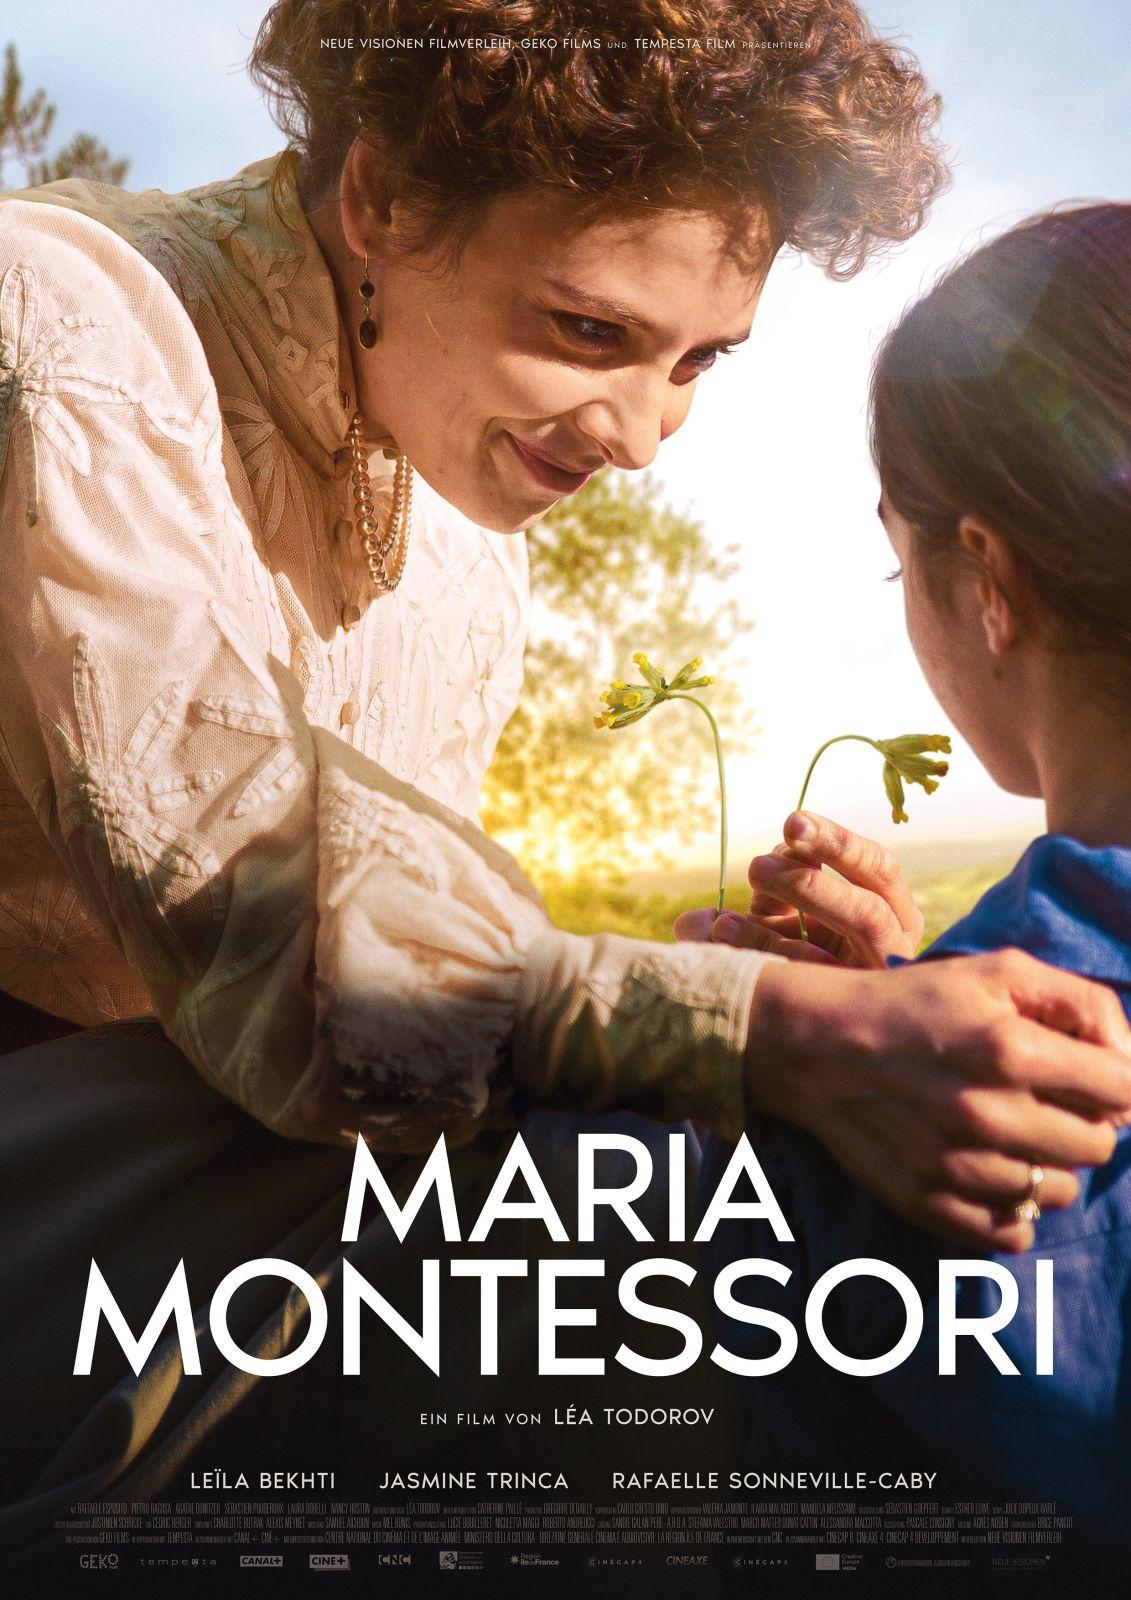 Filmvorführung „Maria Montessori“